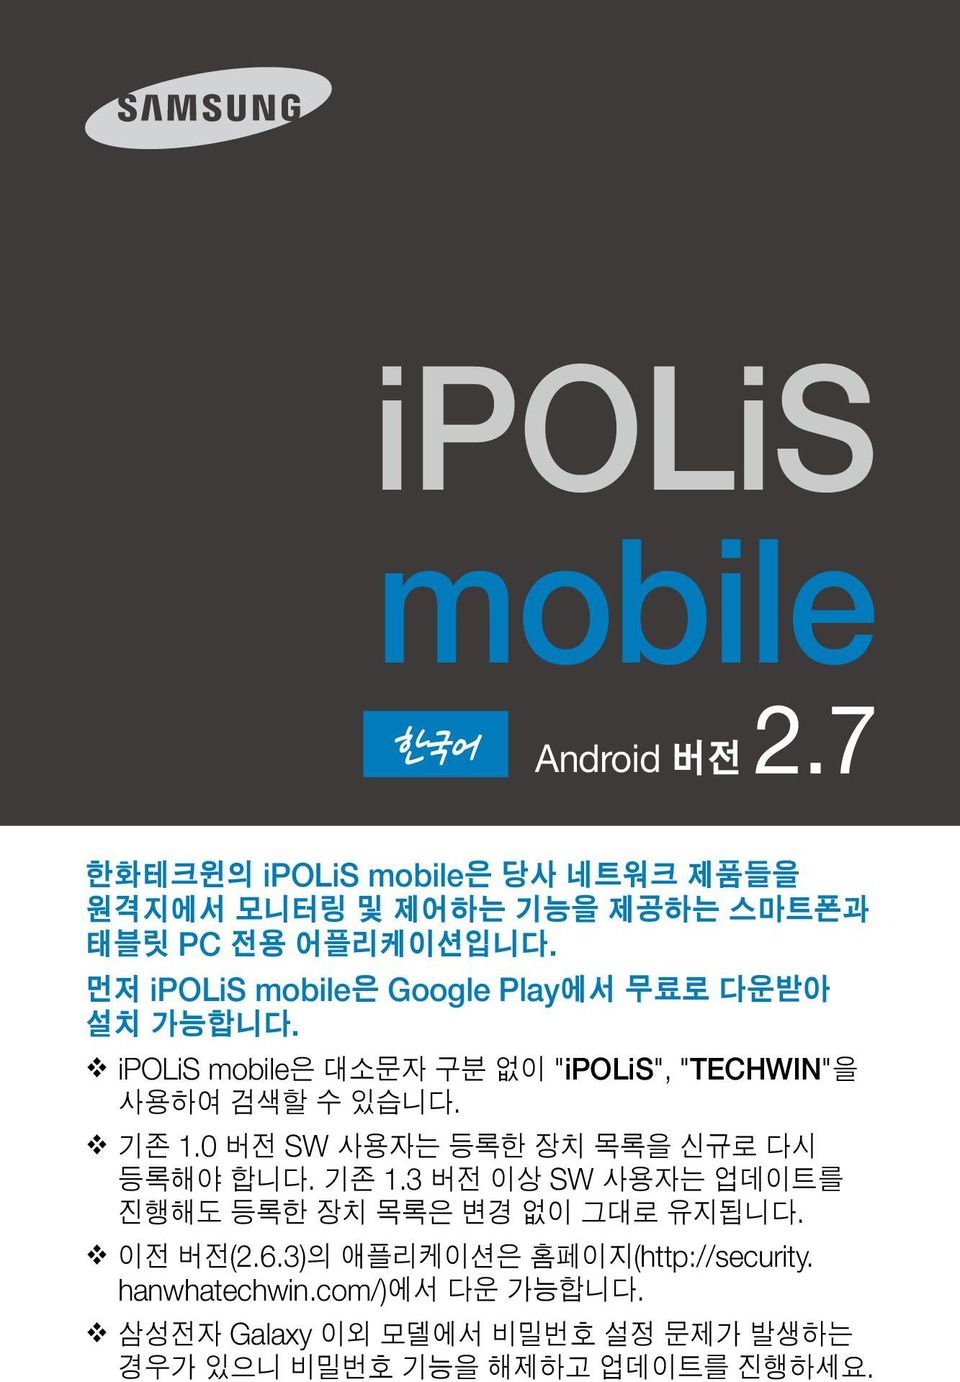 Play ipolis mobile "ipolis", "TECHWIN". 1.